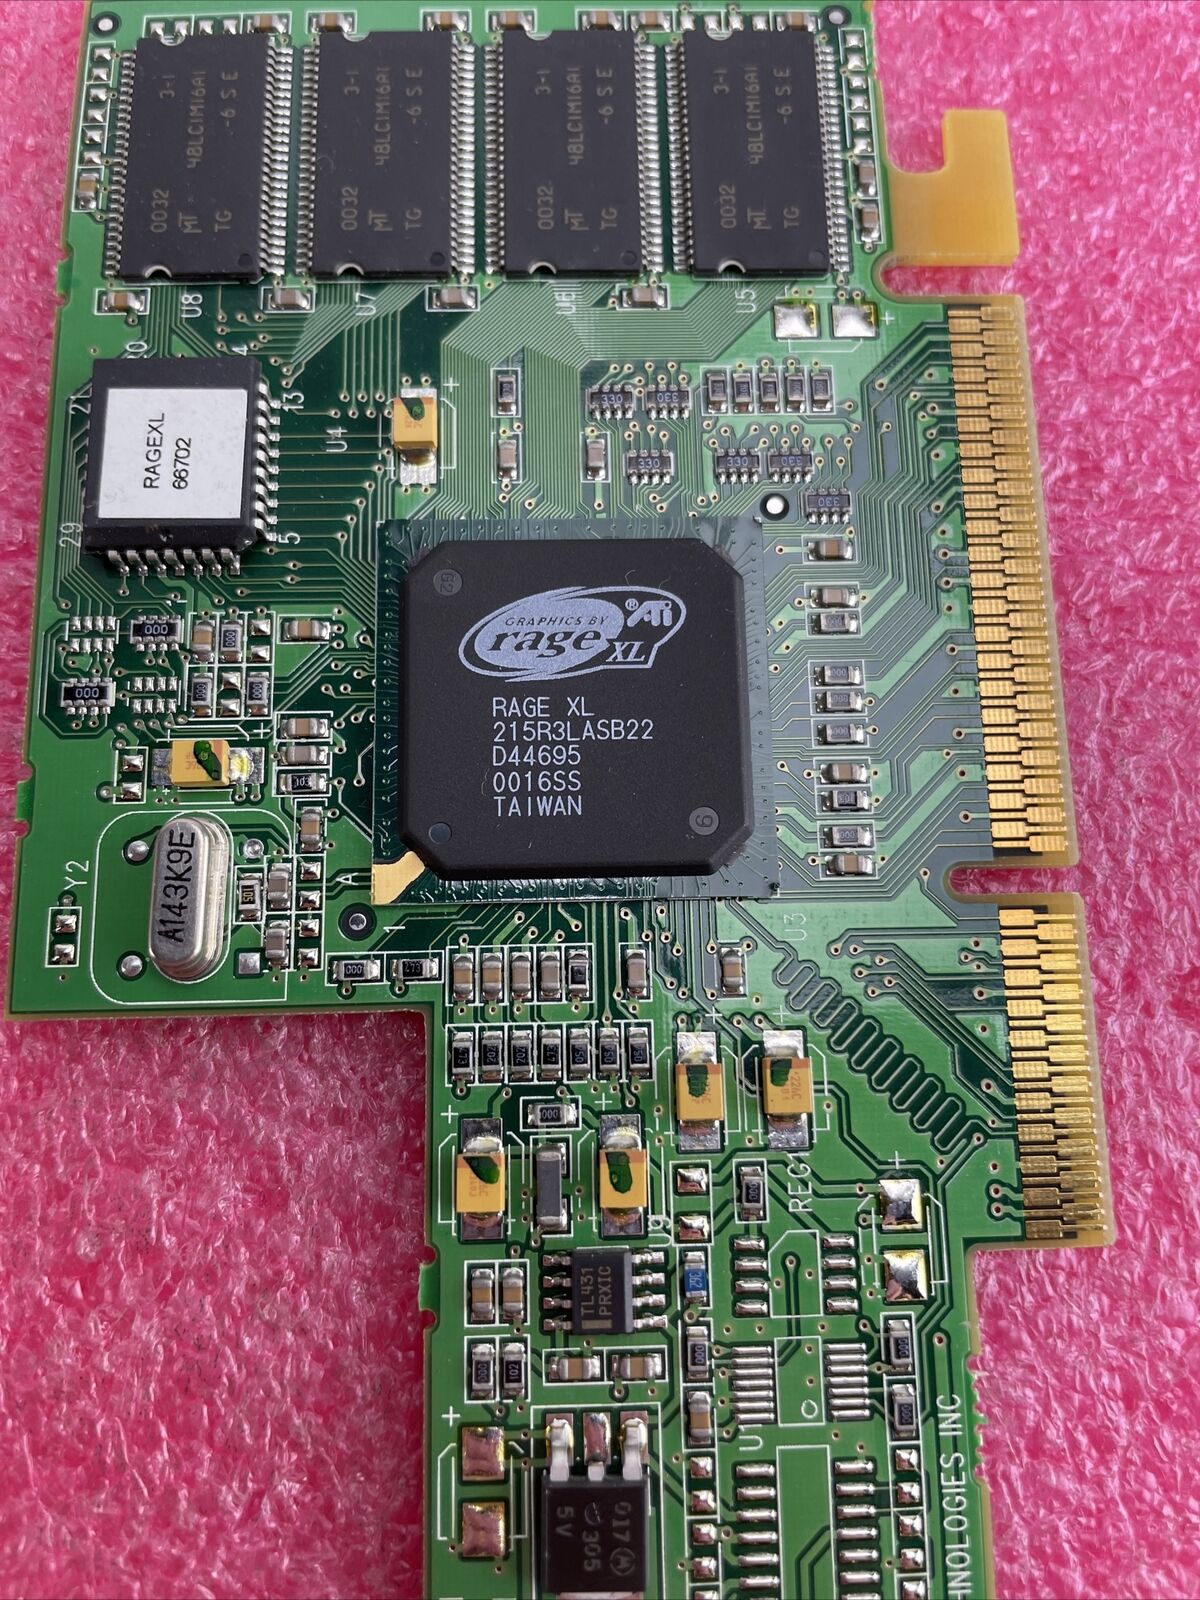 ATI Rage XL 66702 8MB AGP VGA Graphics Card